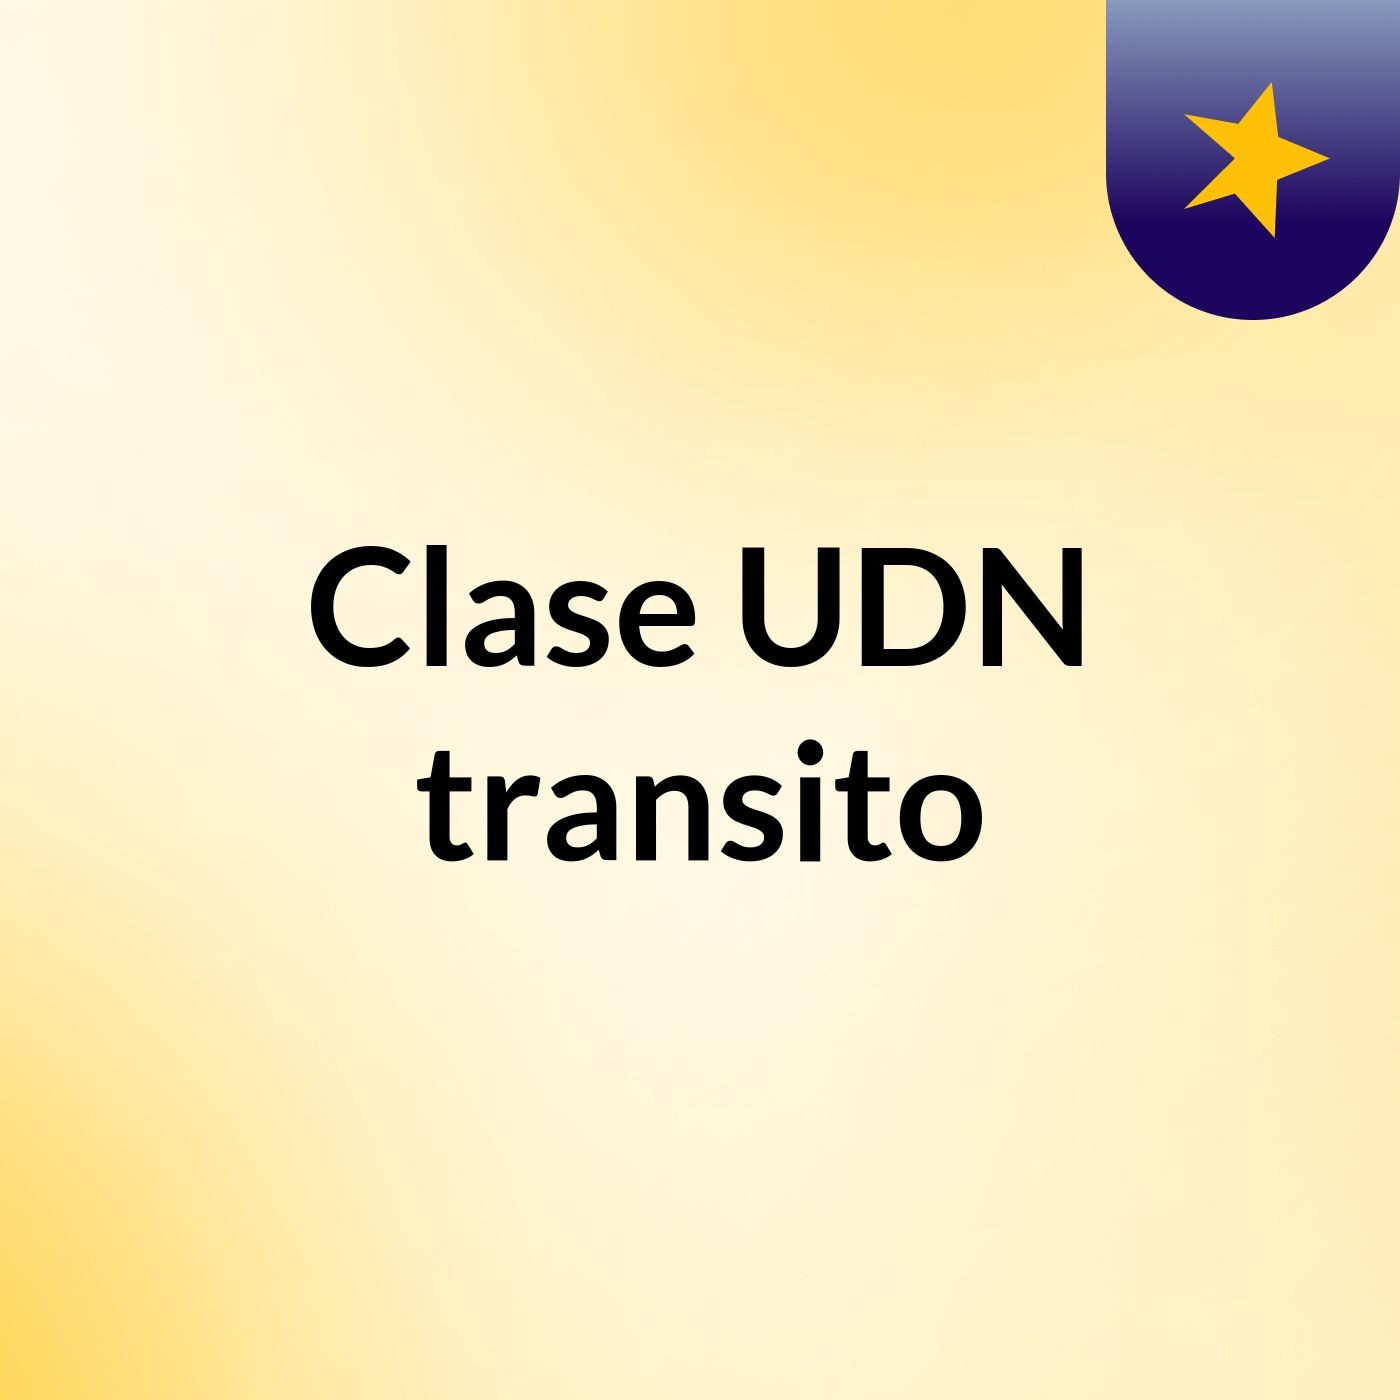 Clase UDN transito